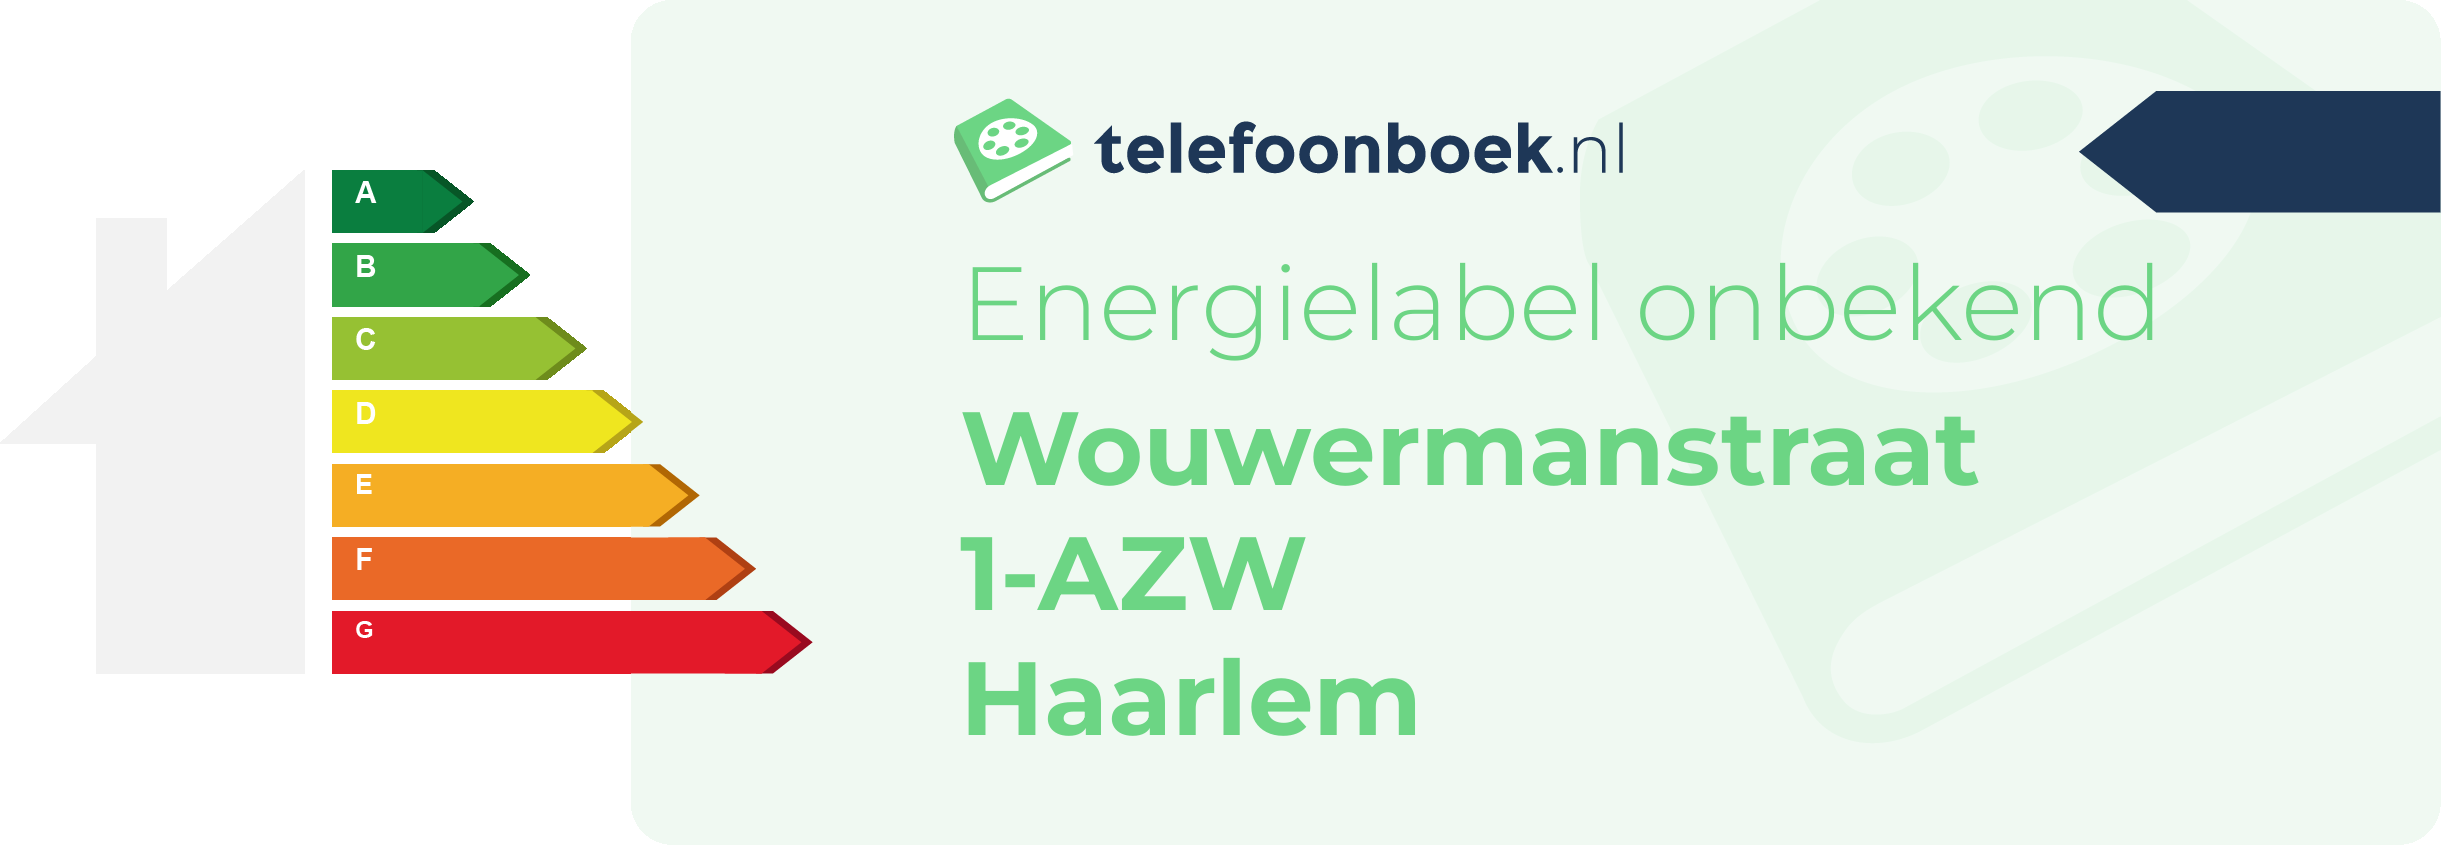 Energielabel Wouwermanstraat 1-AZW Haarlem